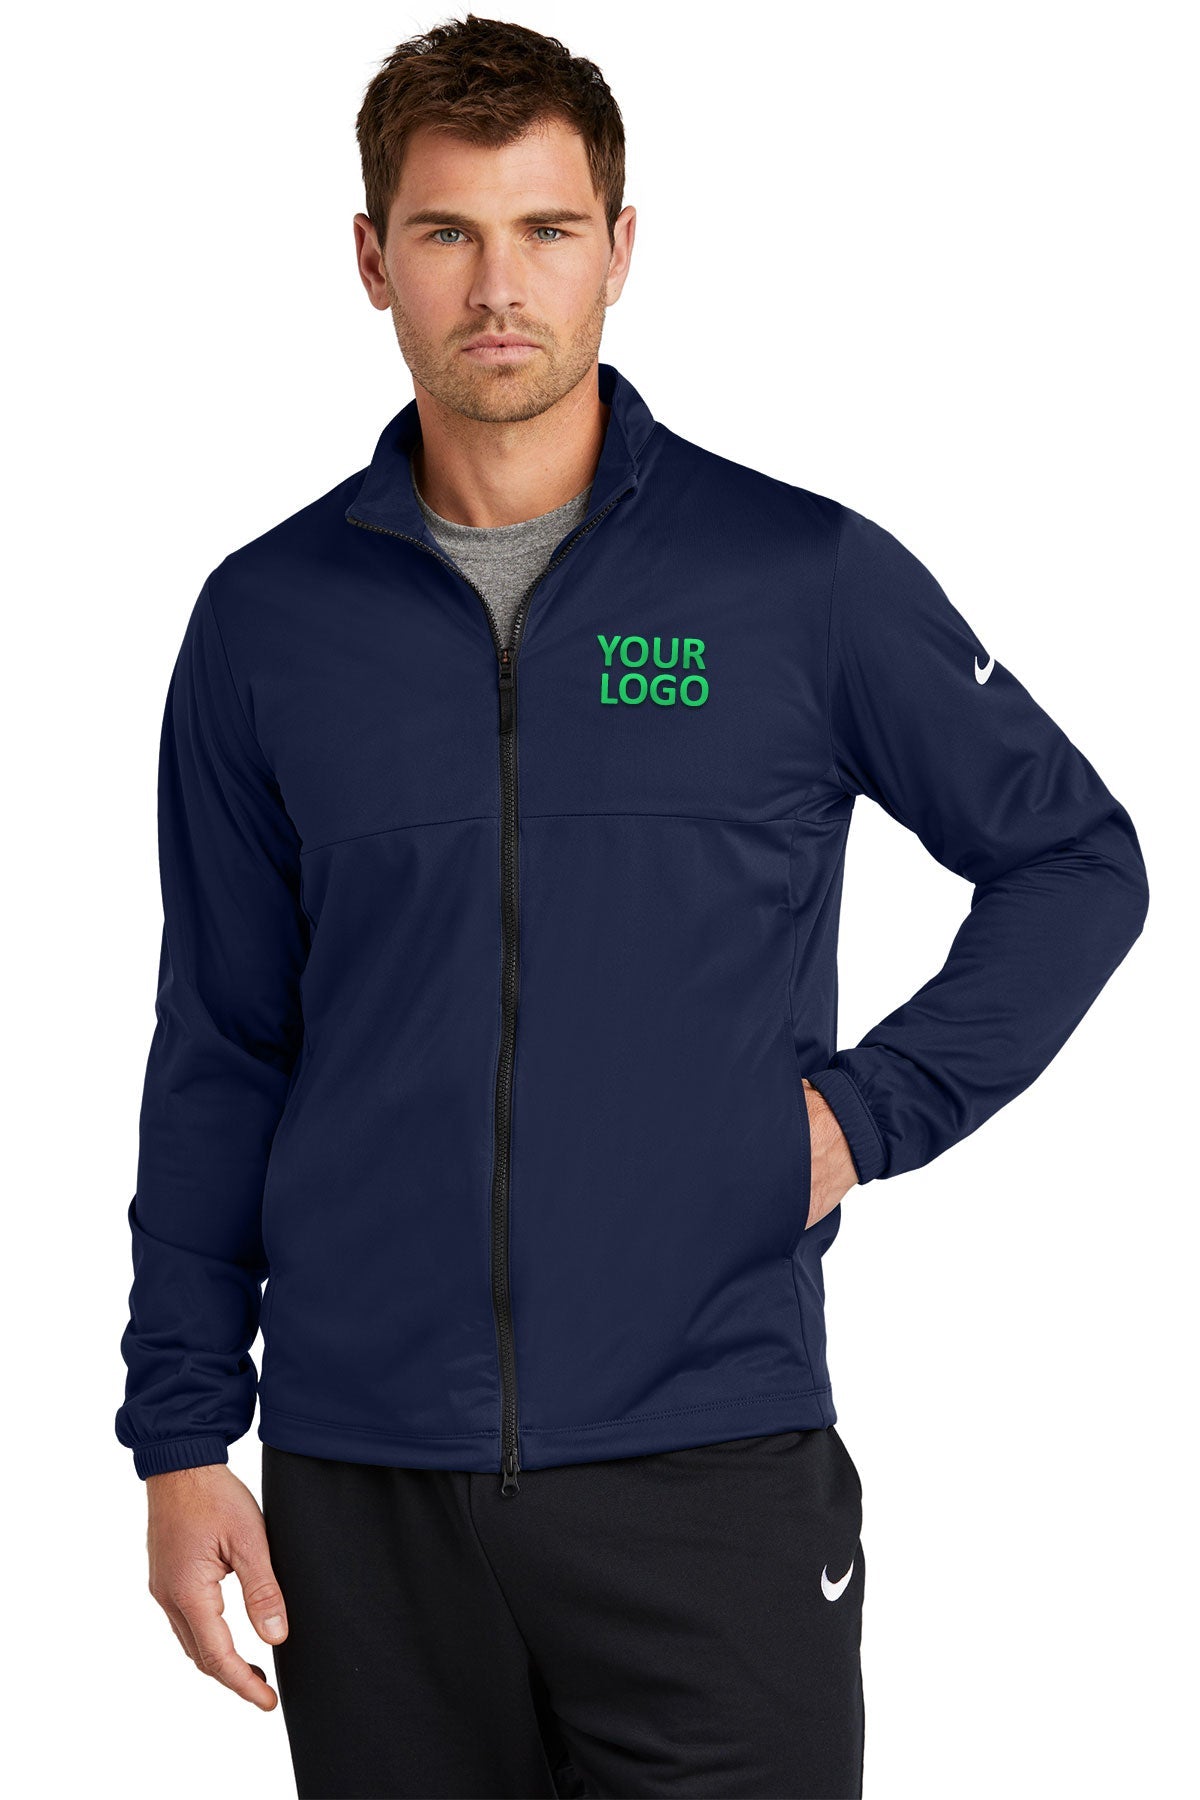 Nike College Navy NKDX6716 company logo jackets